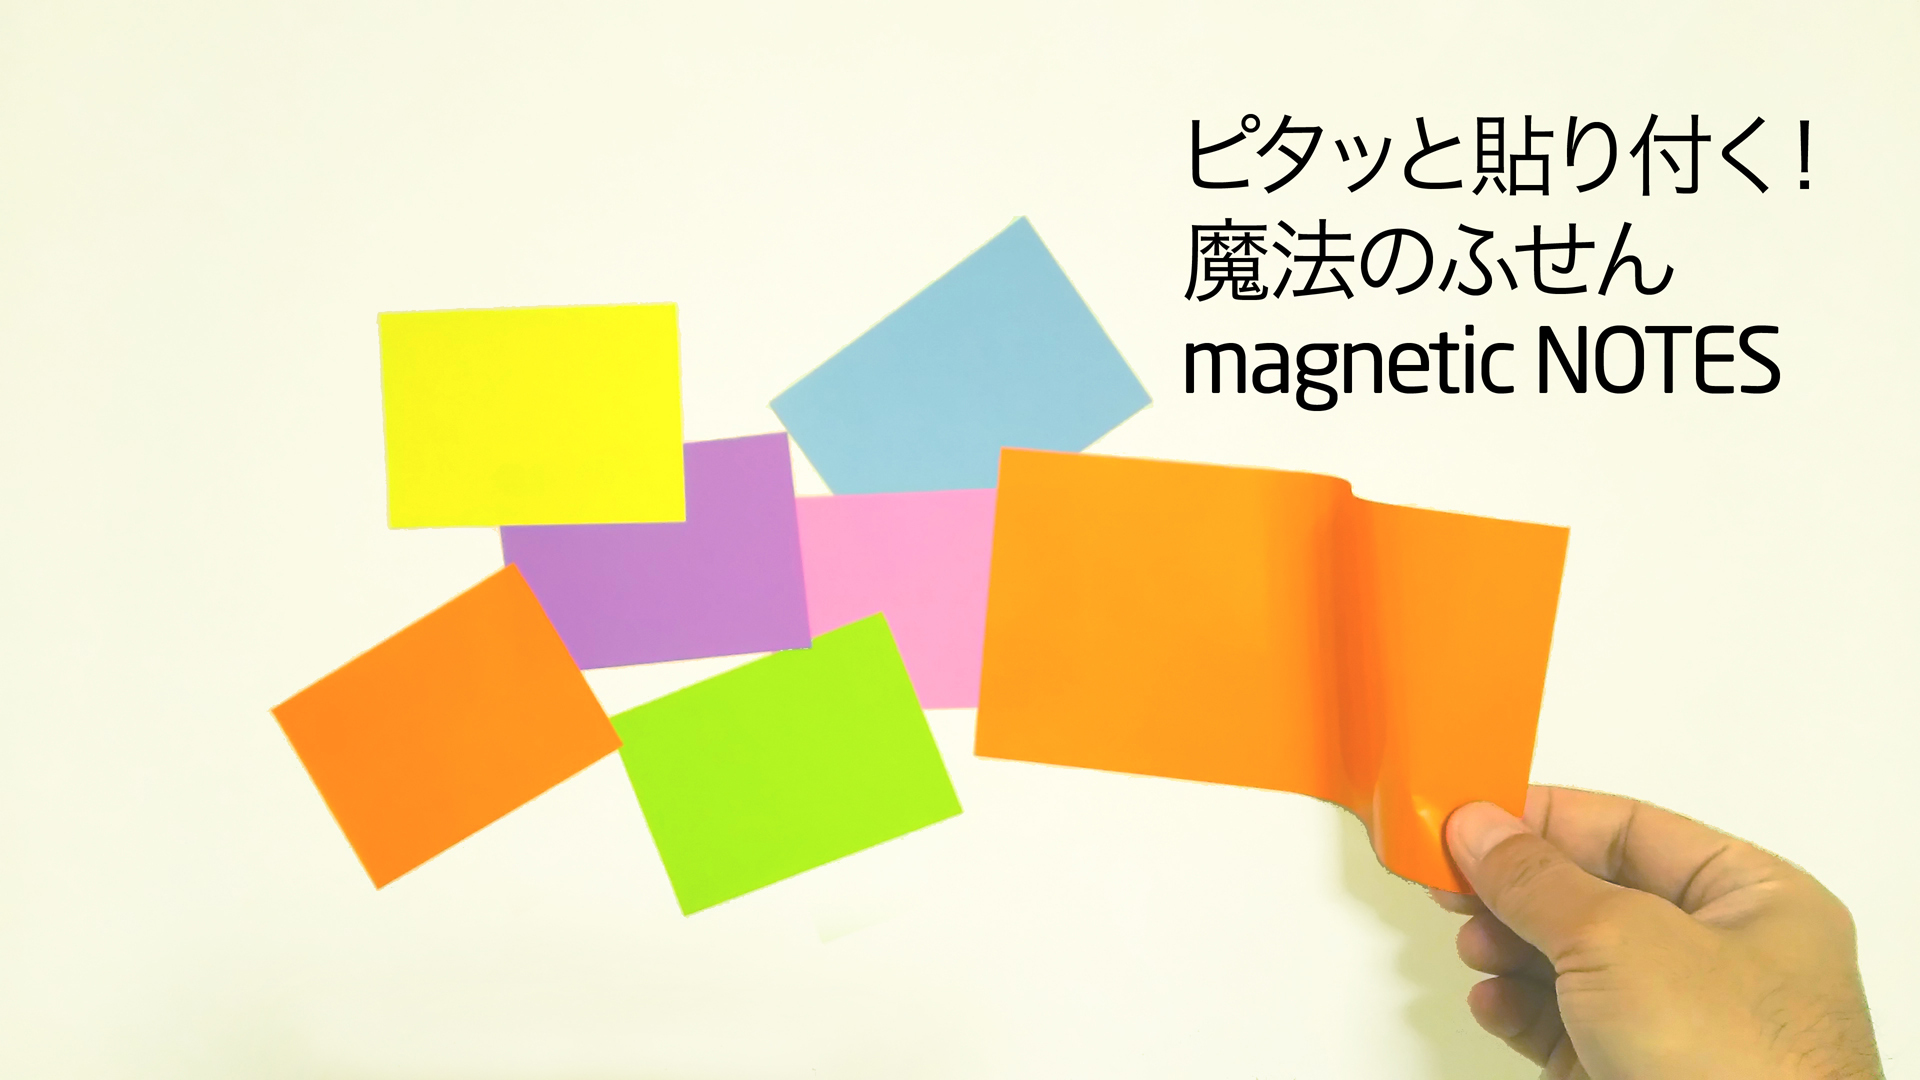 日本文具大賞受賞 魔法のふせん Magnetic Notes 春を感じるパステルカラーが新登場 従業員3人のベンチャー企業が5ヶ月で売上8万個を達成 株式会社ウインテックのプレスリリース